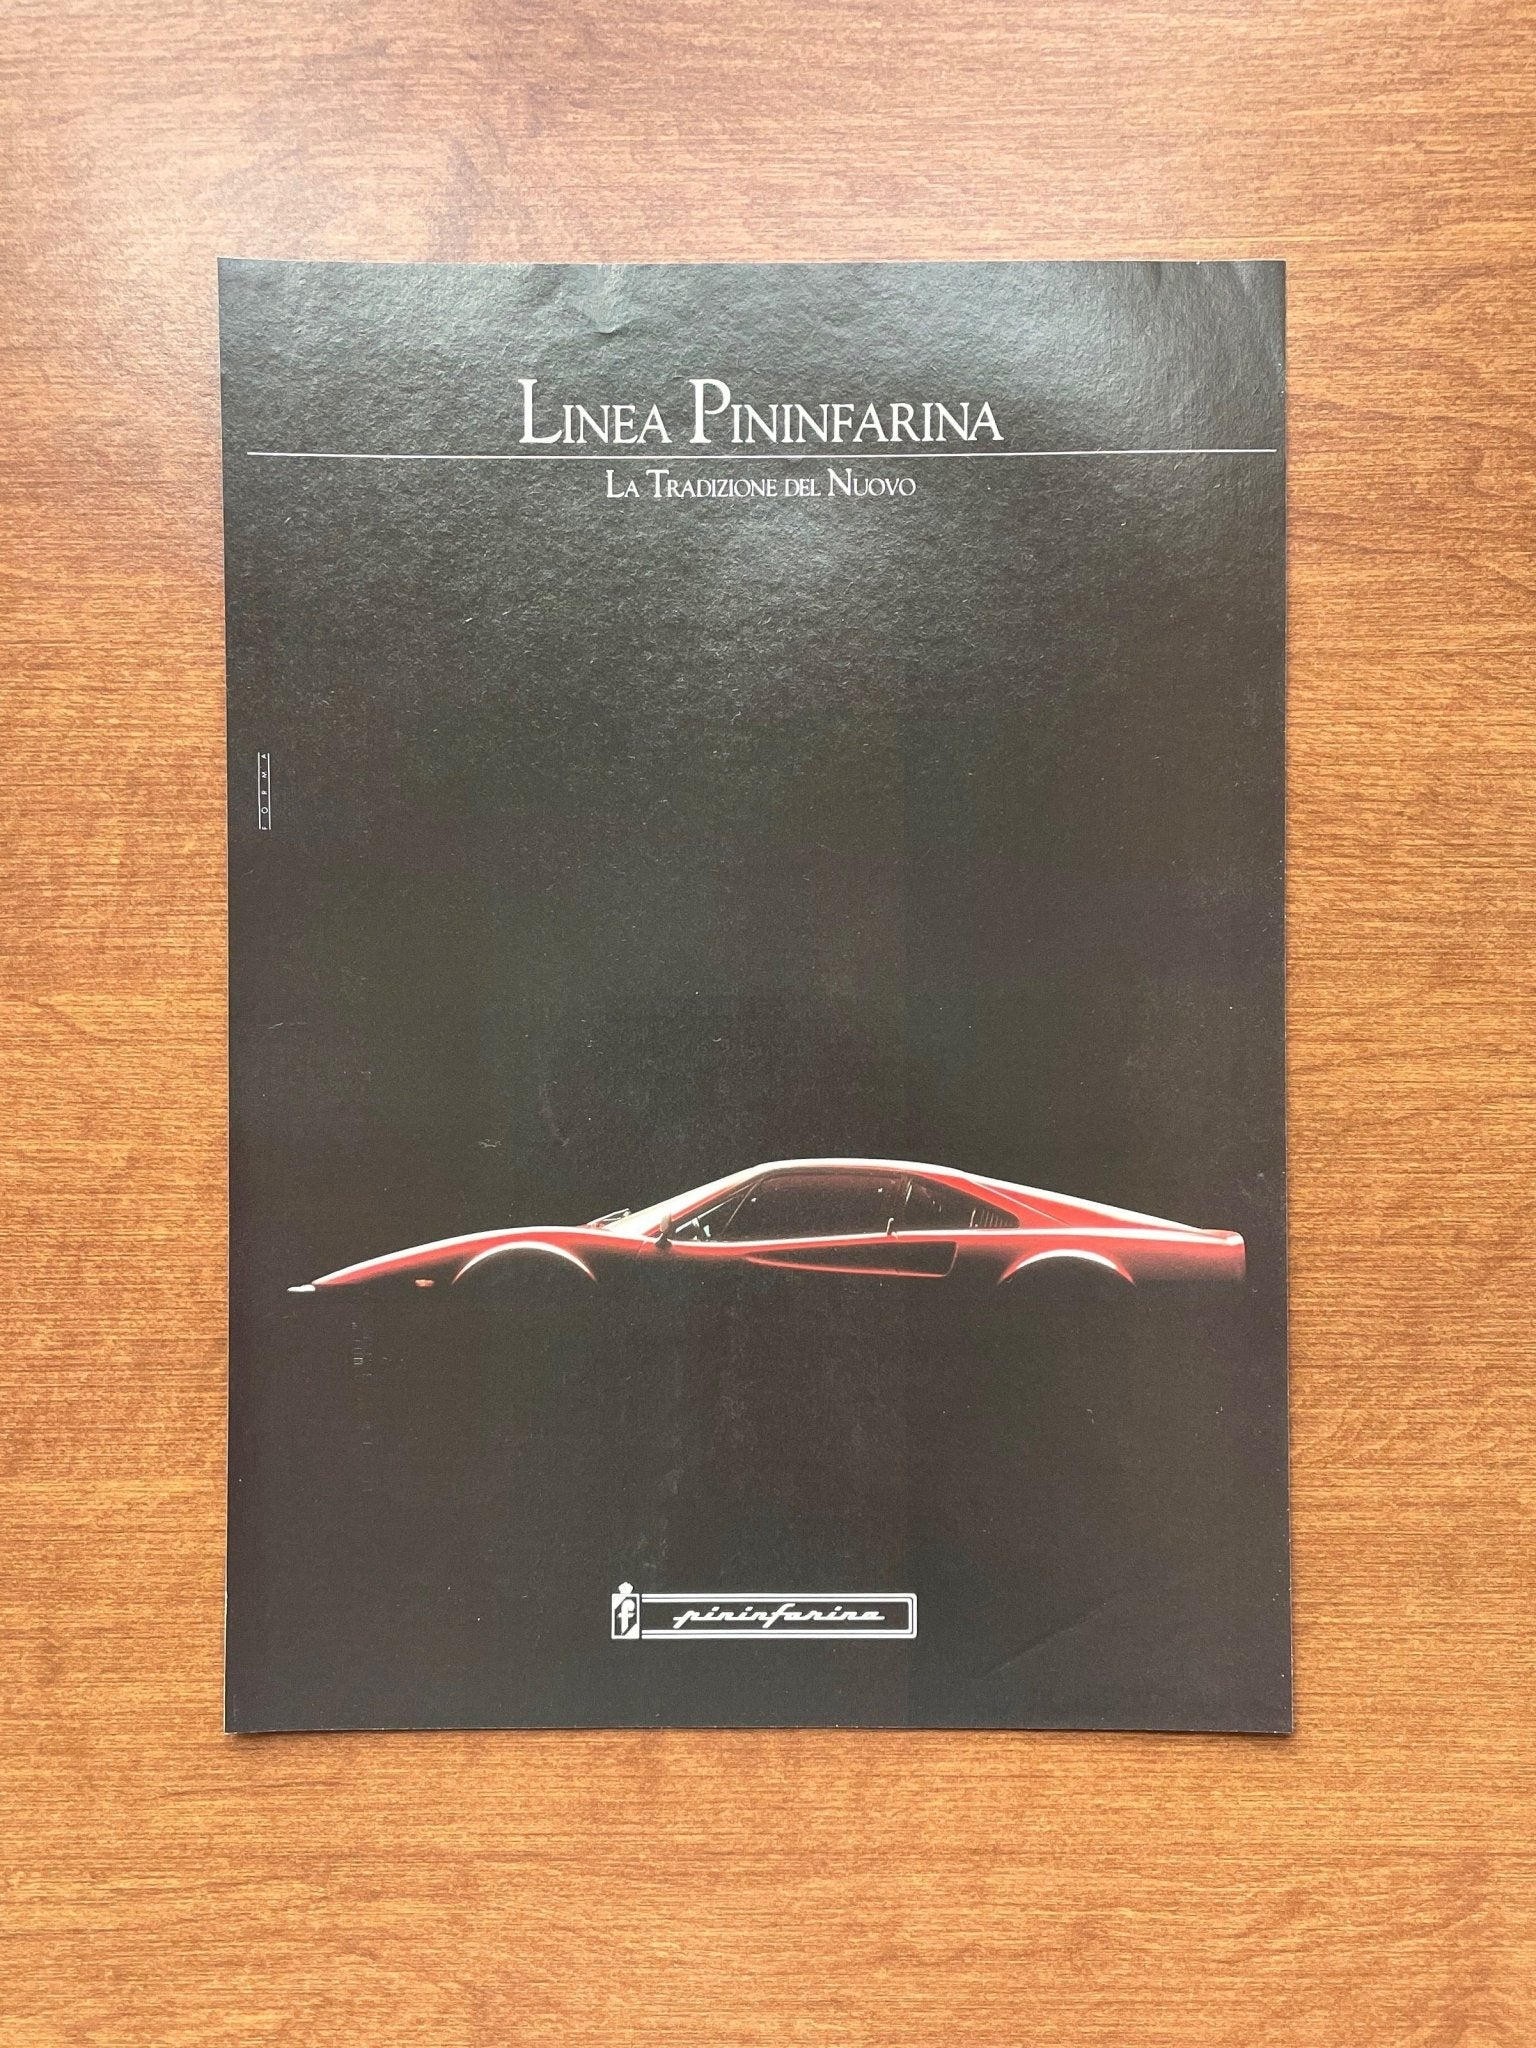 1989 Ferrari Linea Pininfarina Advertisement